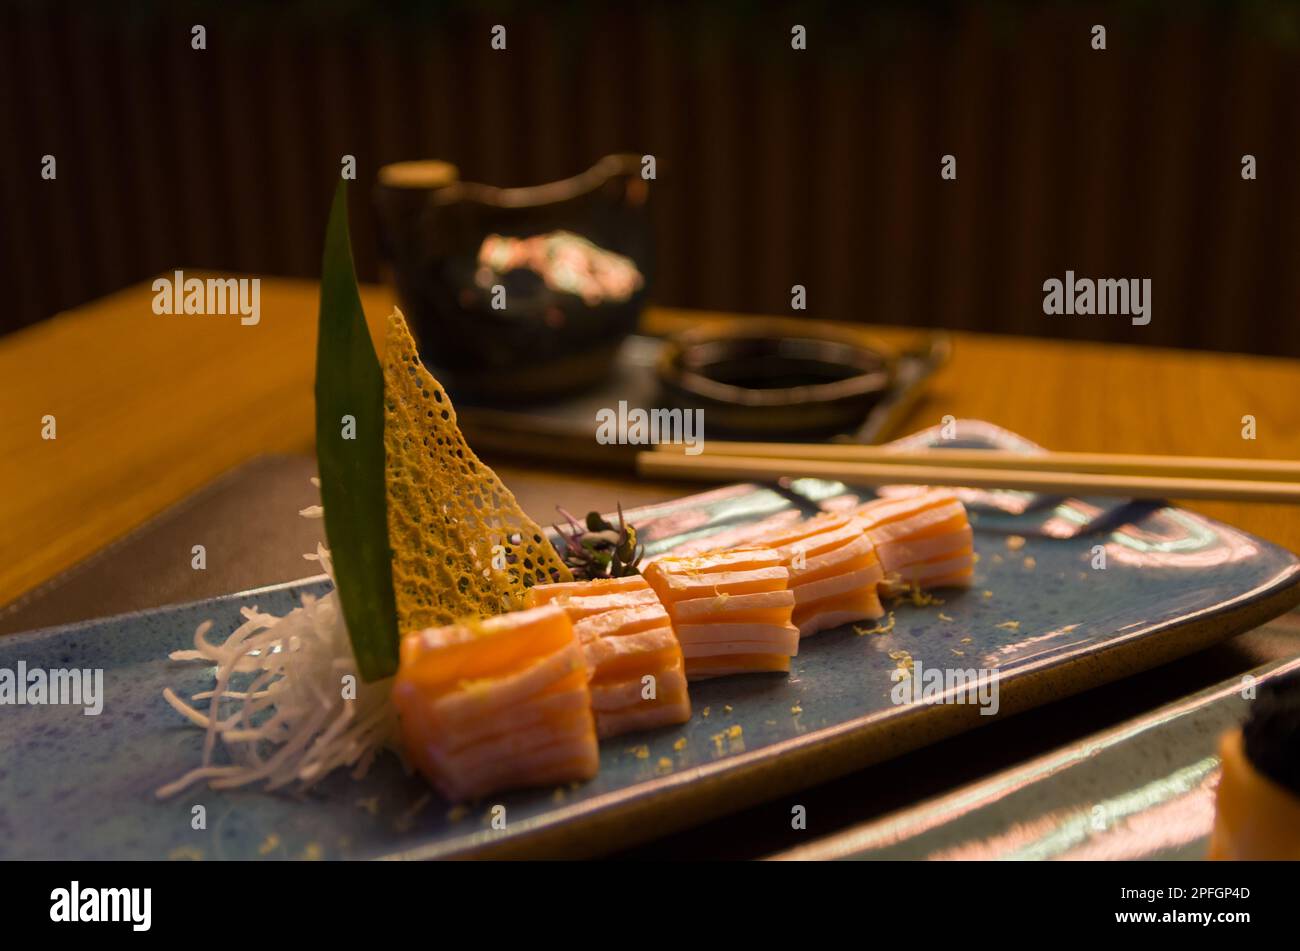 Mélange de différents sushis japonais sur une élégante assiette bleue. Banque D'Images